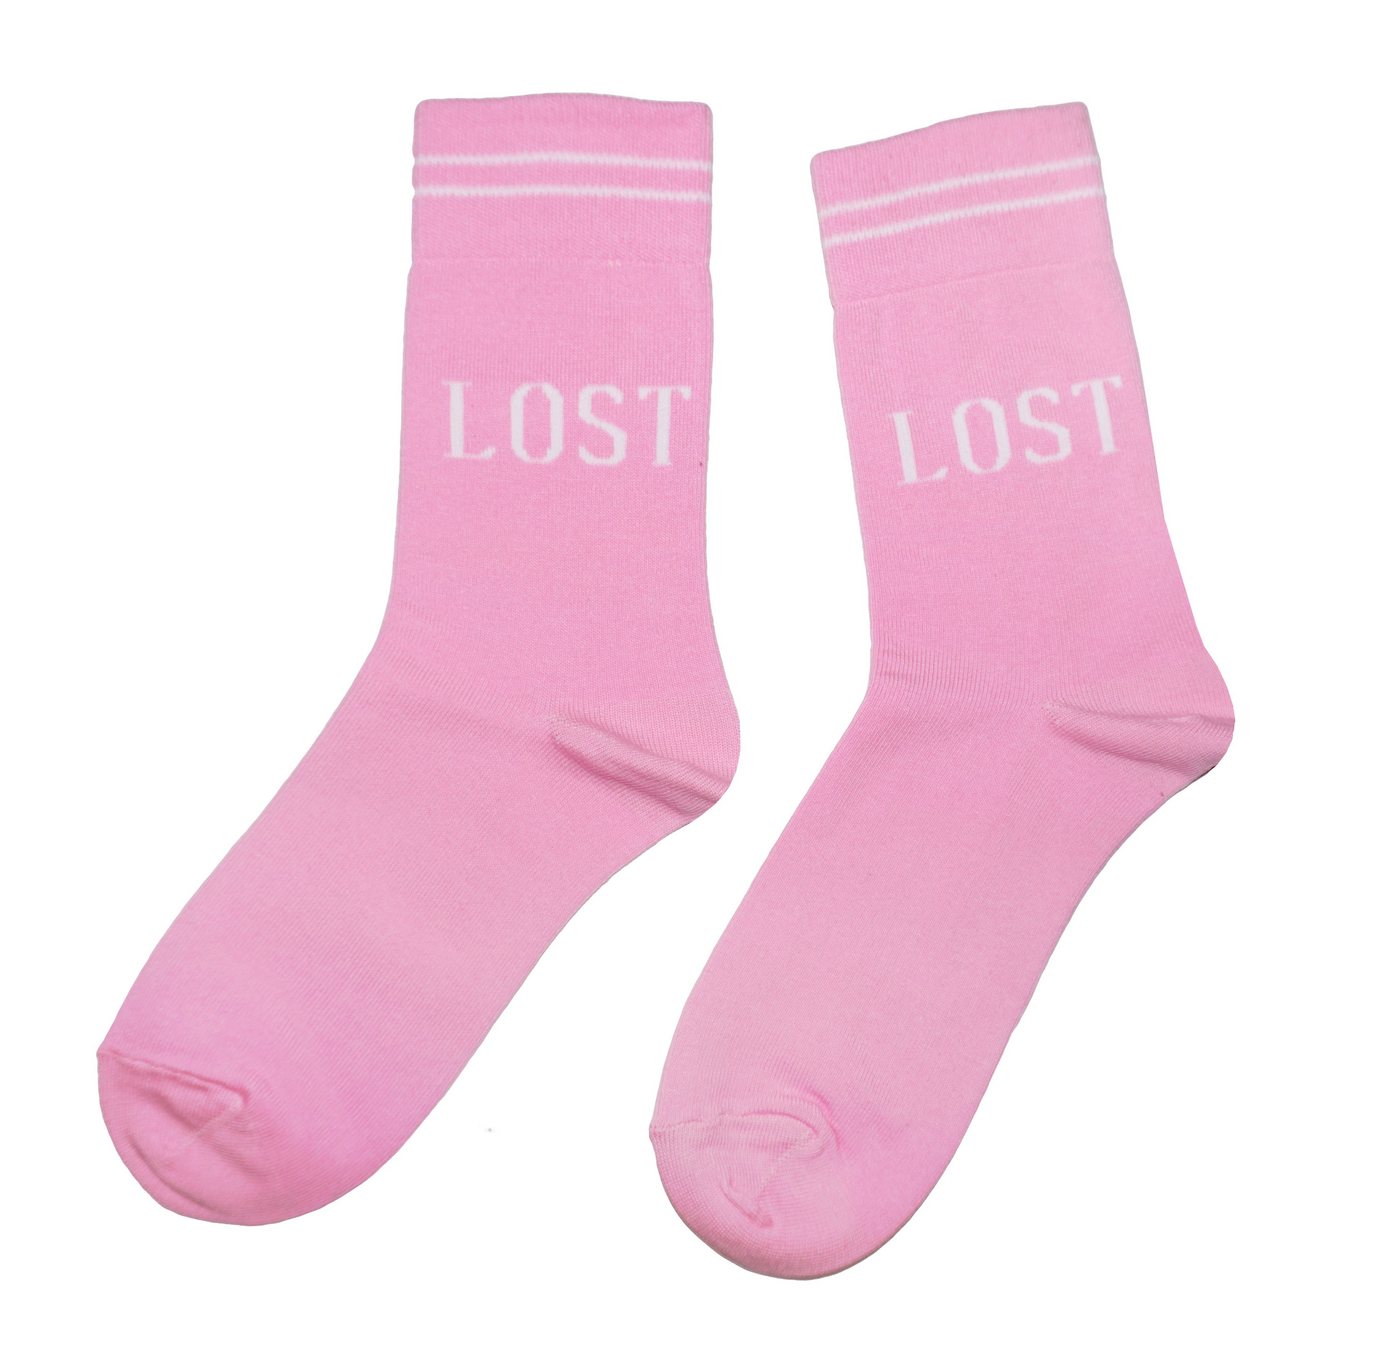 WERI SPEZIALS Strumpfhersteller GmbH Basicsocken Damen Socken >>Lost<< aus Baumwolle von WERI SPEZIALS Strumpfhersteller GmbH